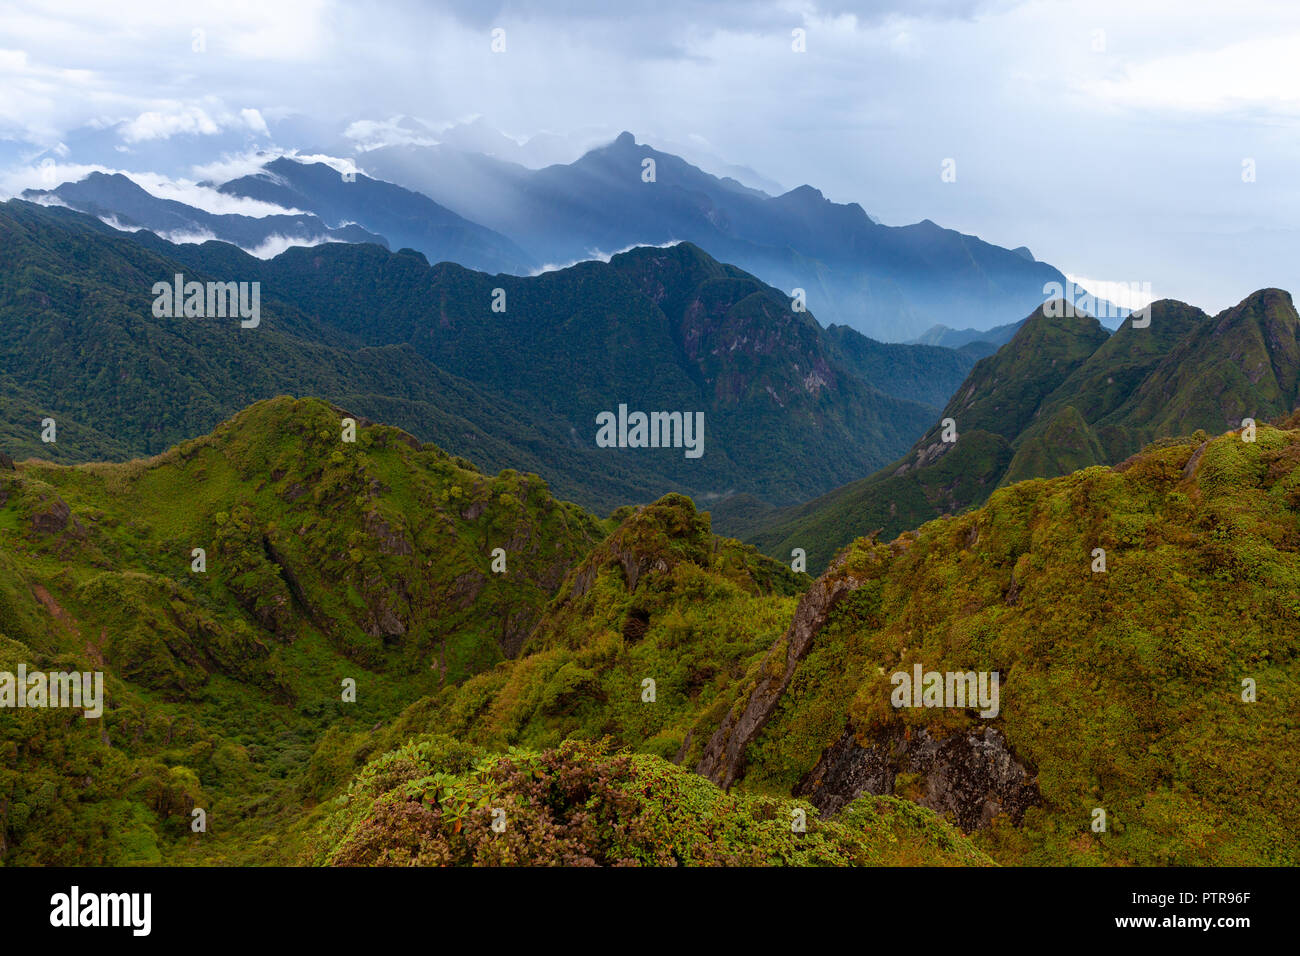 Atemberaubende Aussicht auf die bergige Gelände vom Gipfel des höchsten Indochina Peak, den Fansipan Berg, Sapa, Lao Cai, Vietnam Stockfoto